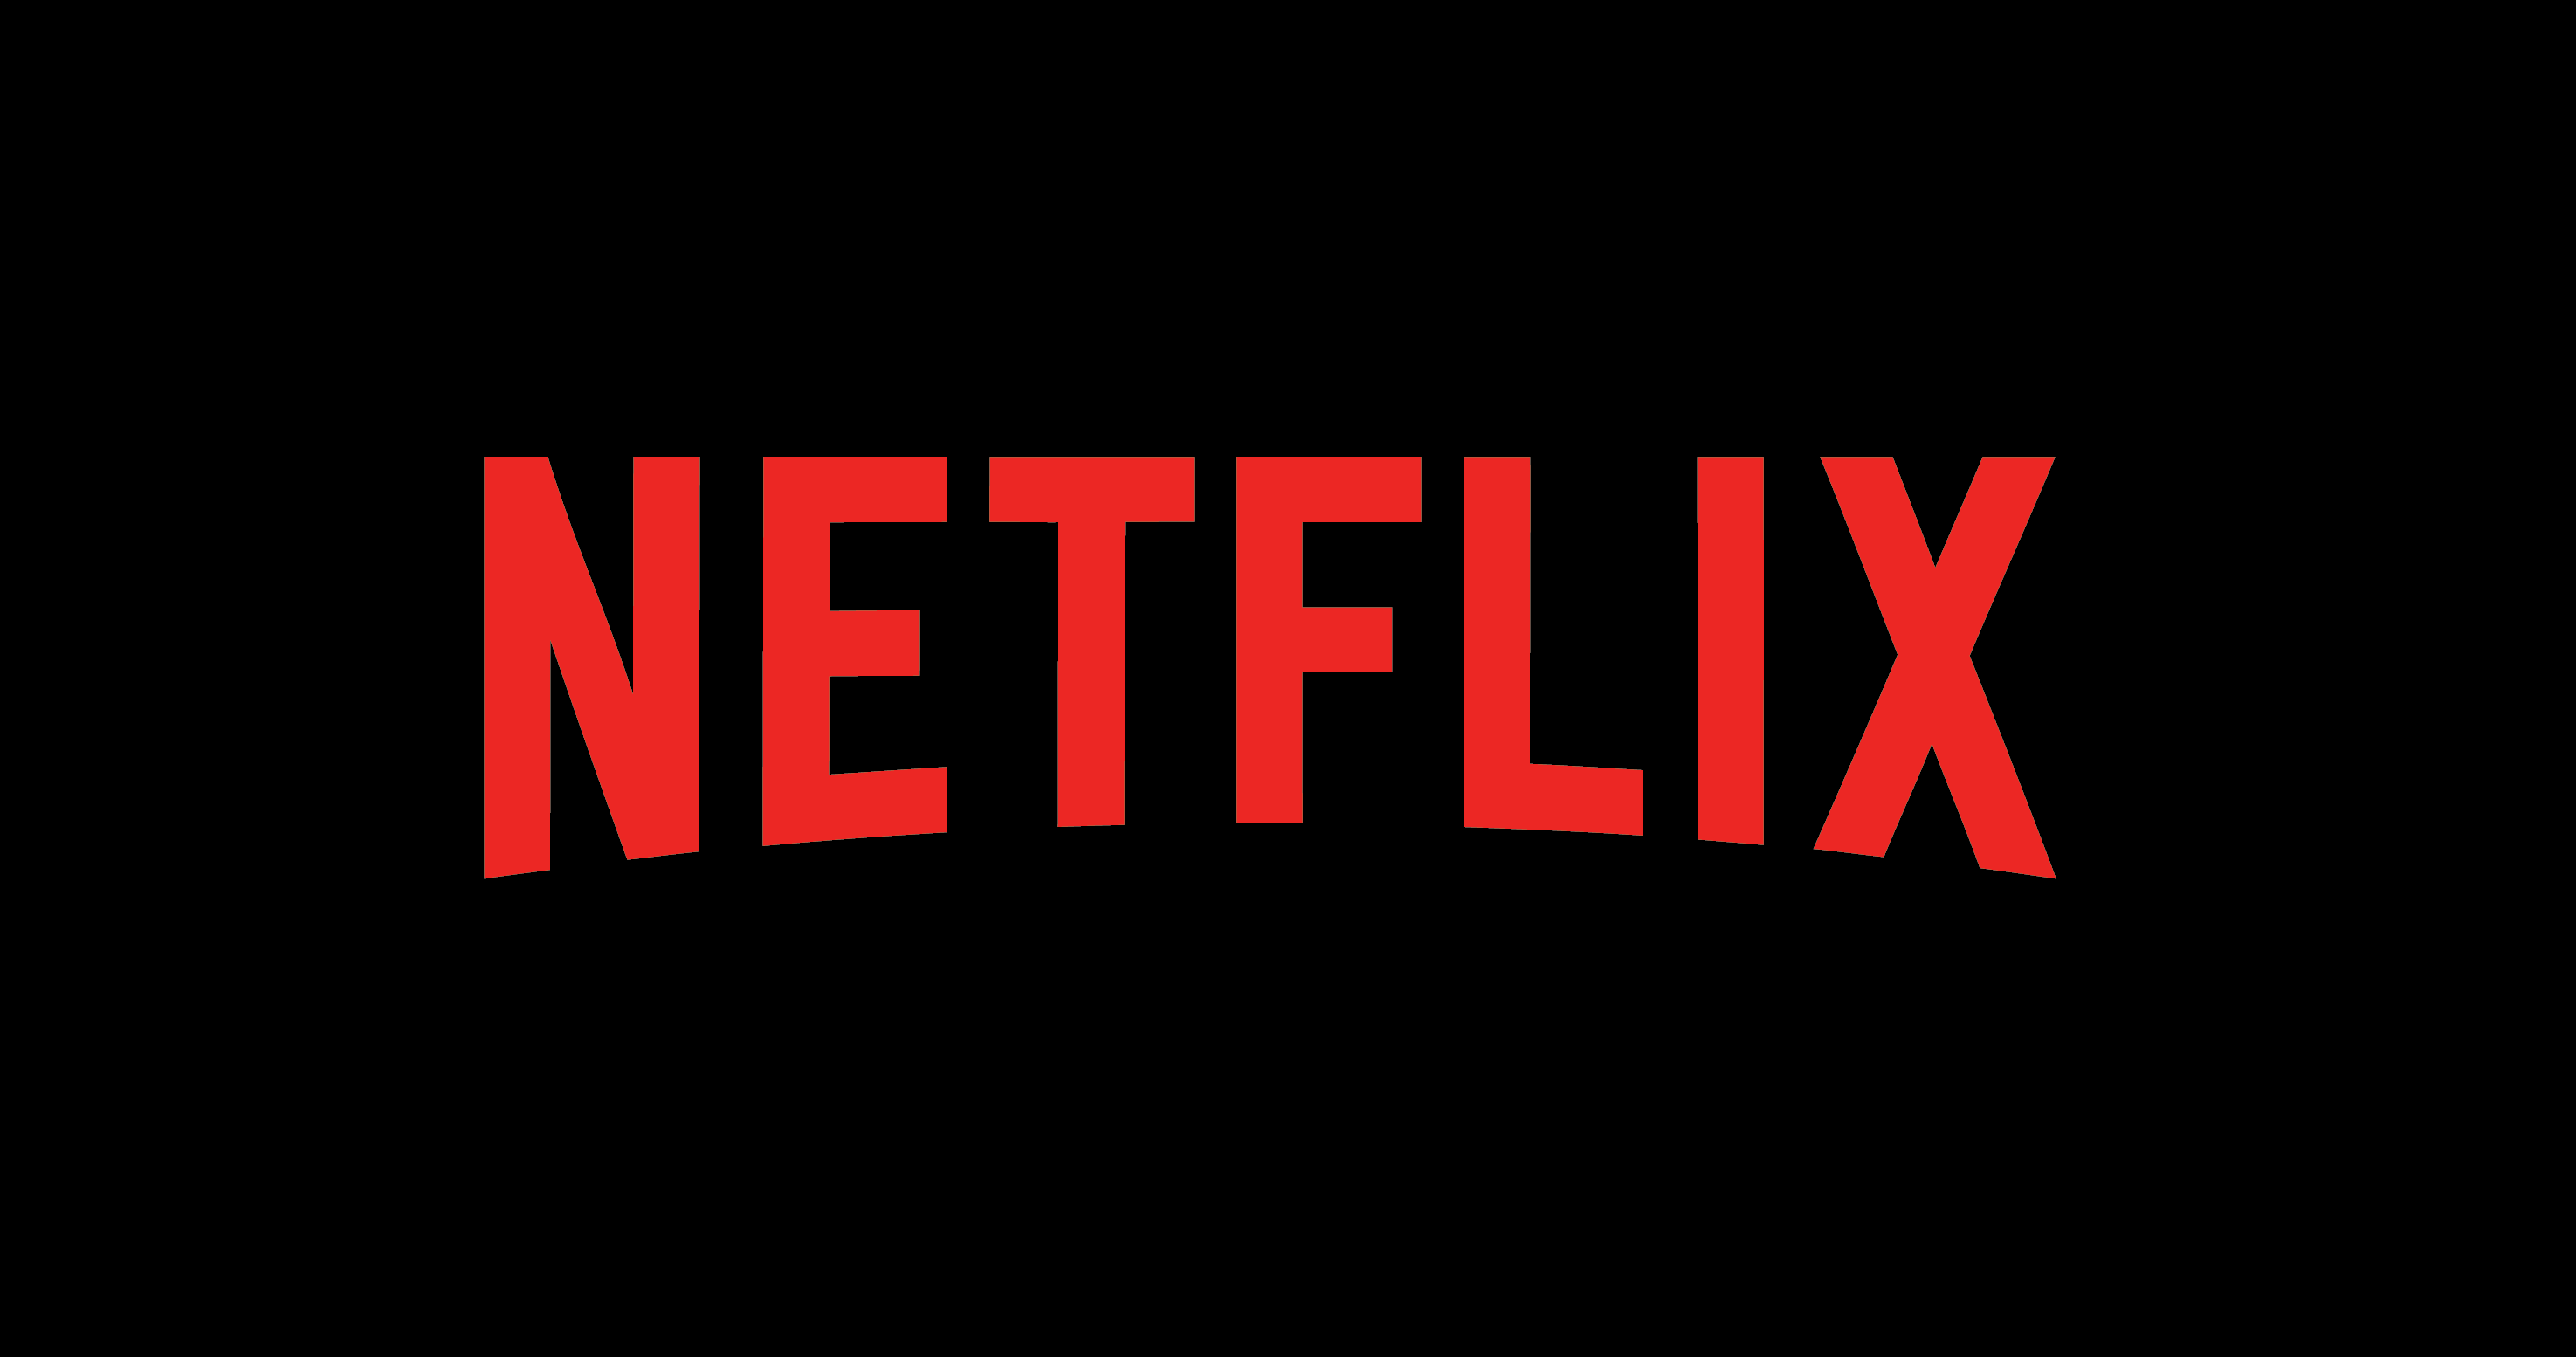 Hulu beats Netflix